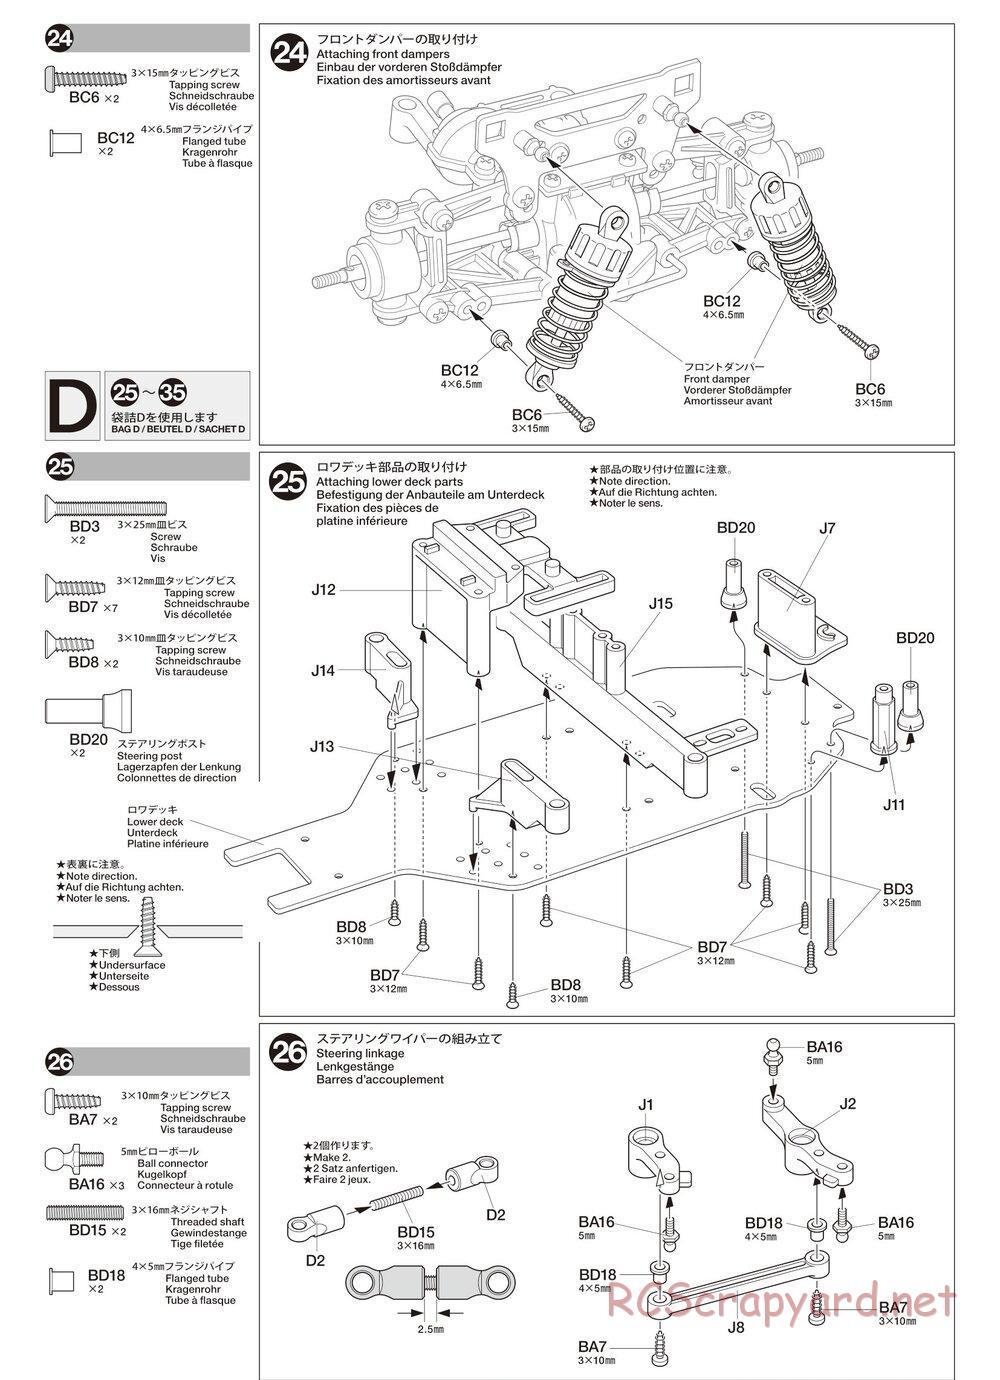 Tamiya - TA02SW Chassis - Manual - Page 12